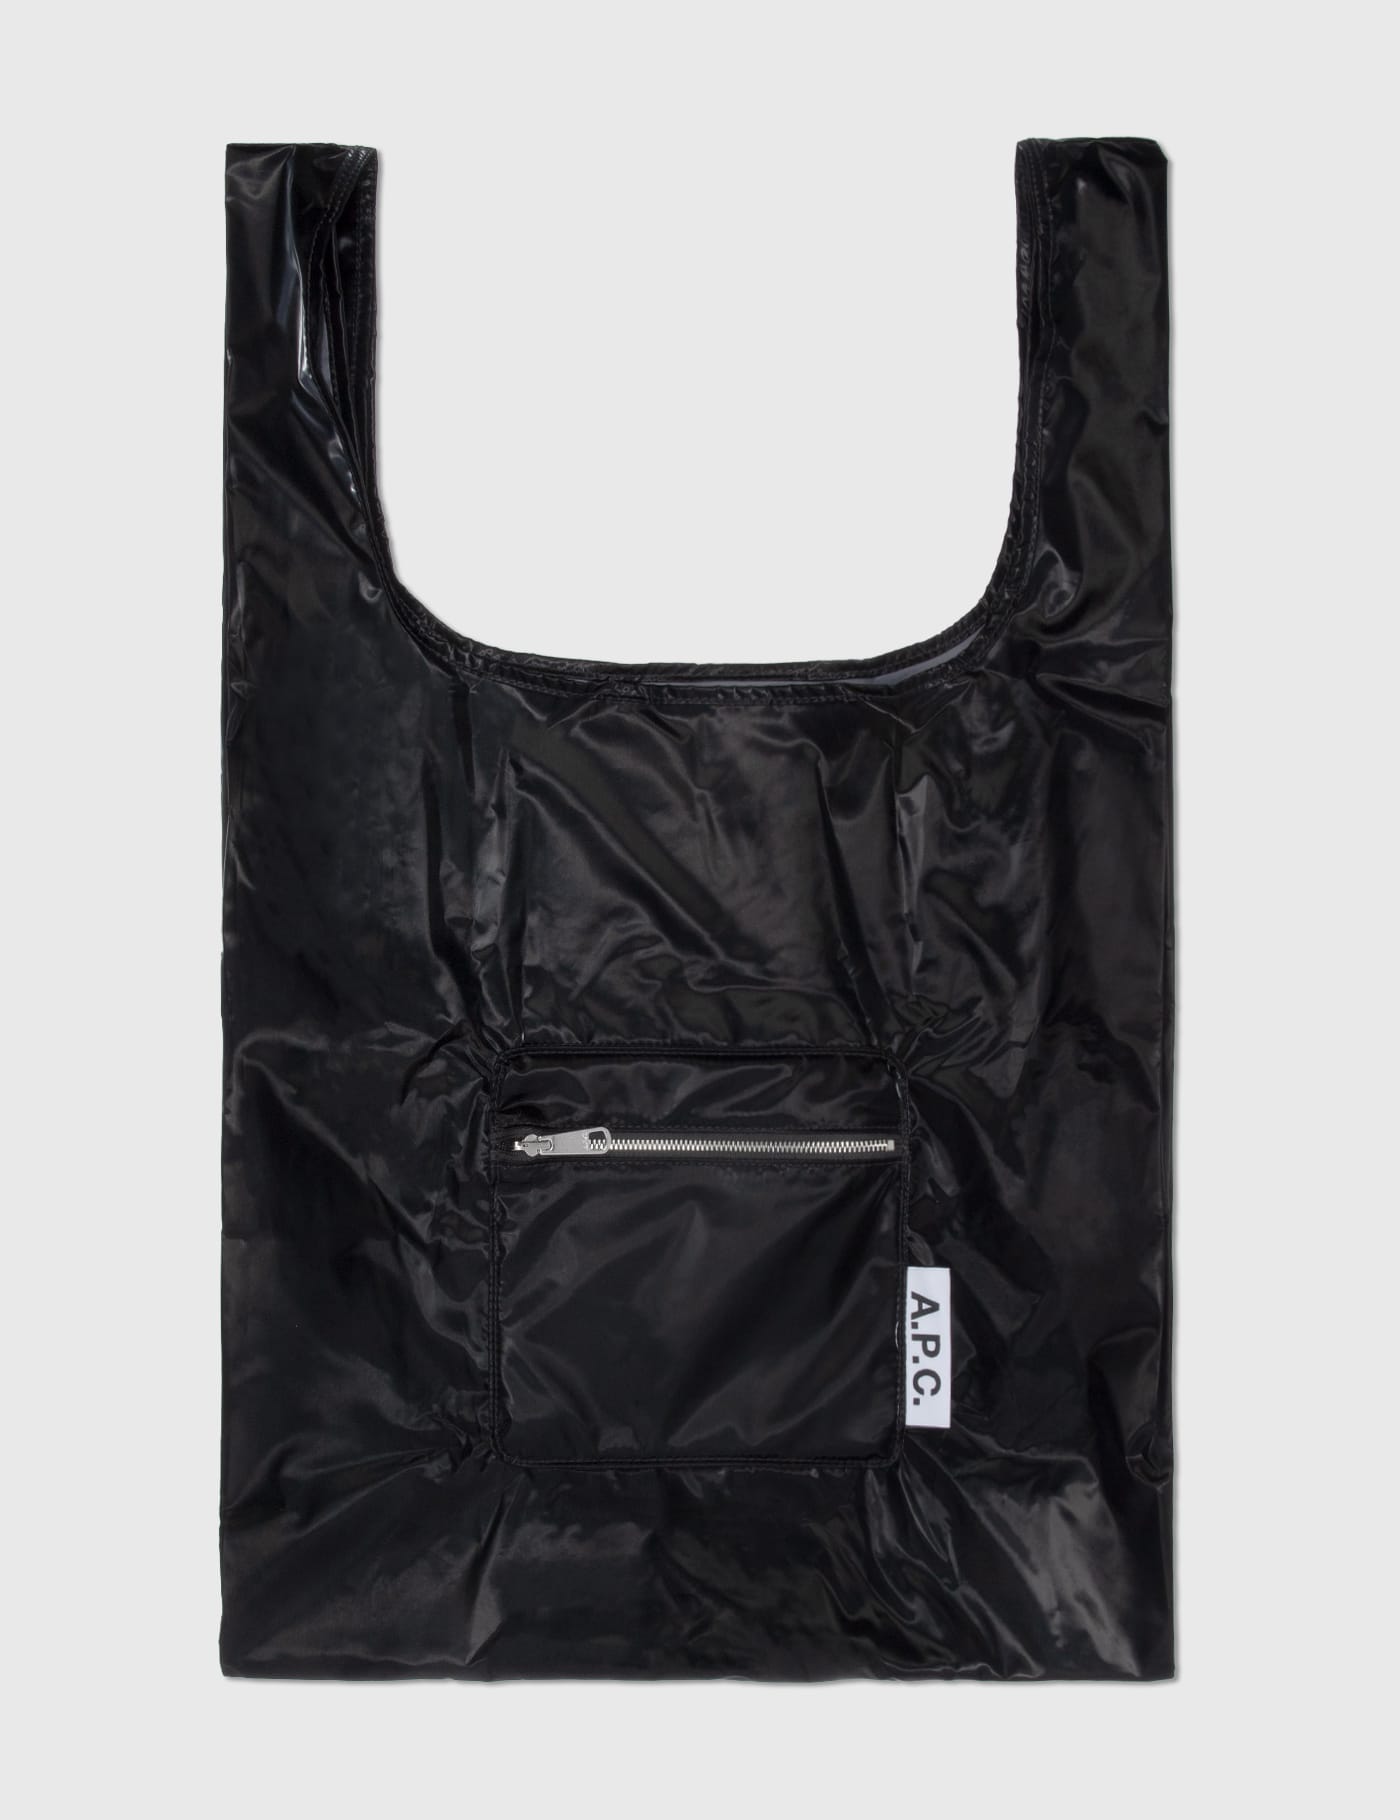 マルニがバスケユニフォームを再現したショッピングバッグを発売 